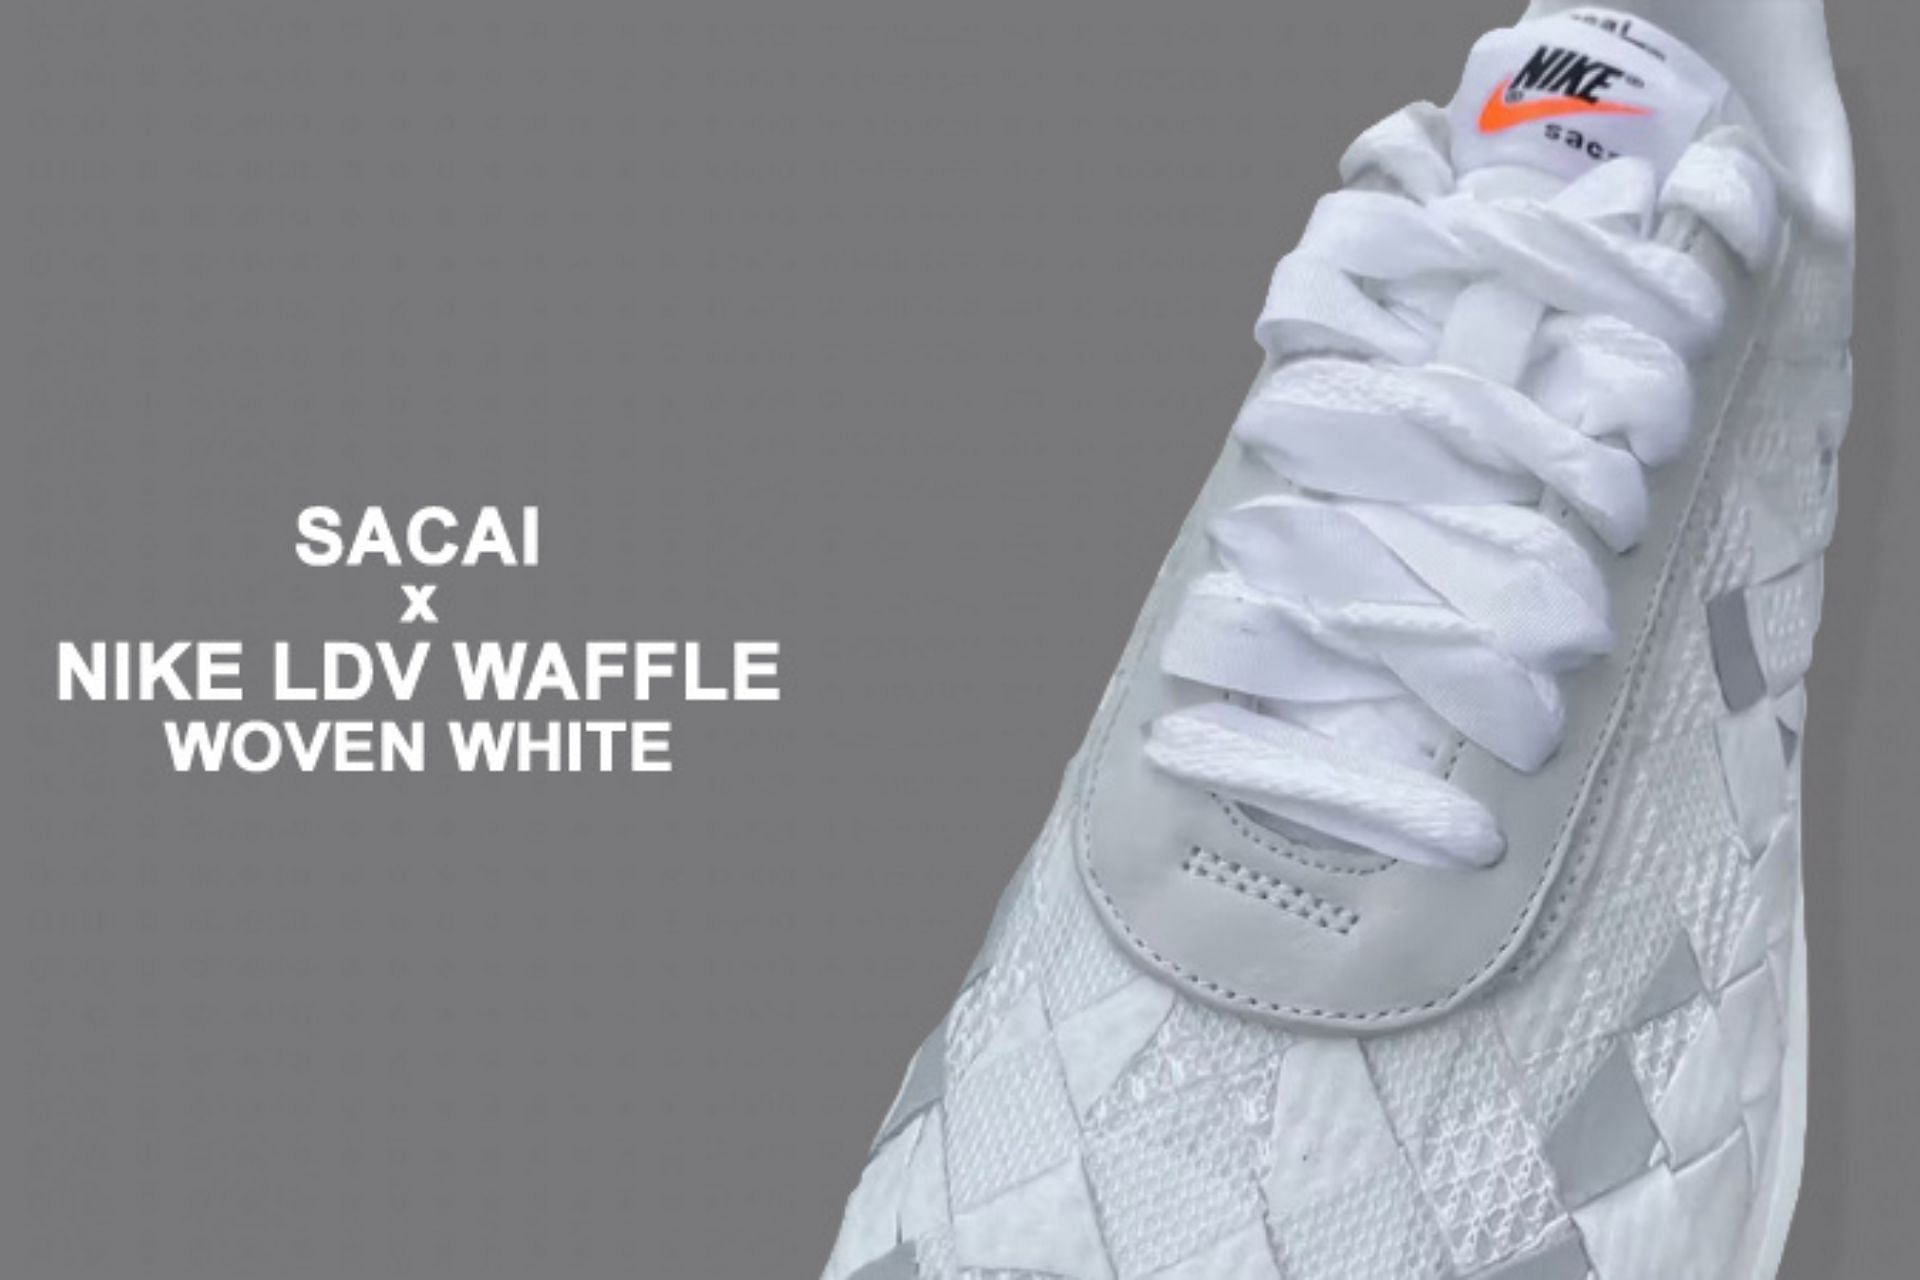 Sacai: Sacai x Nike Waffle Woven “White” shoes: Everything we know